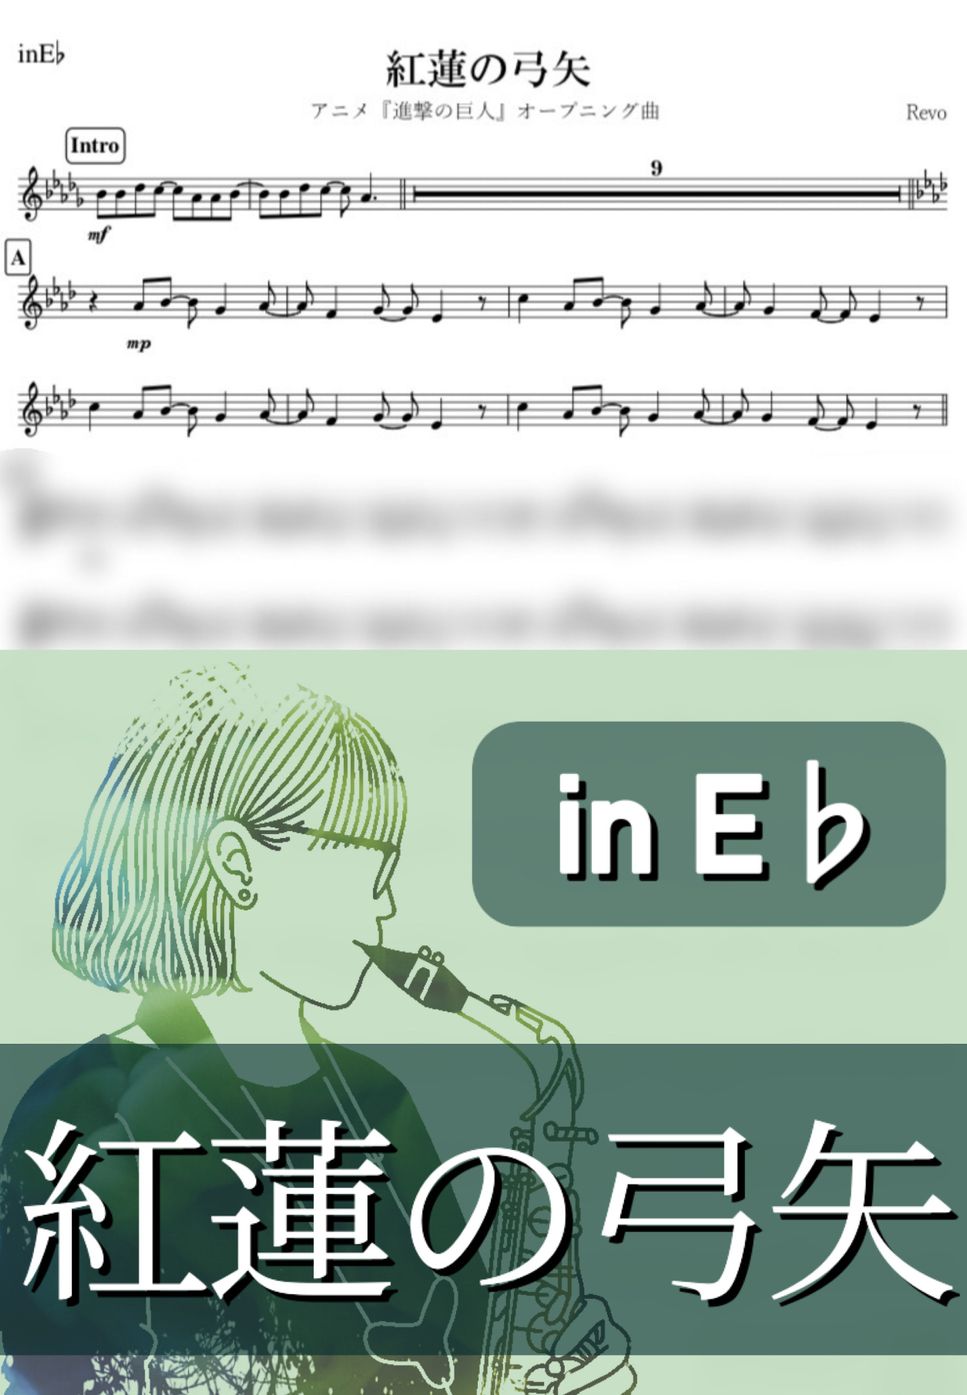 進撃の巨人 - 紅蓮の弓矢 (E♭) by kanamusic